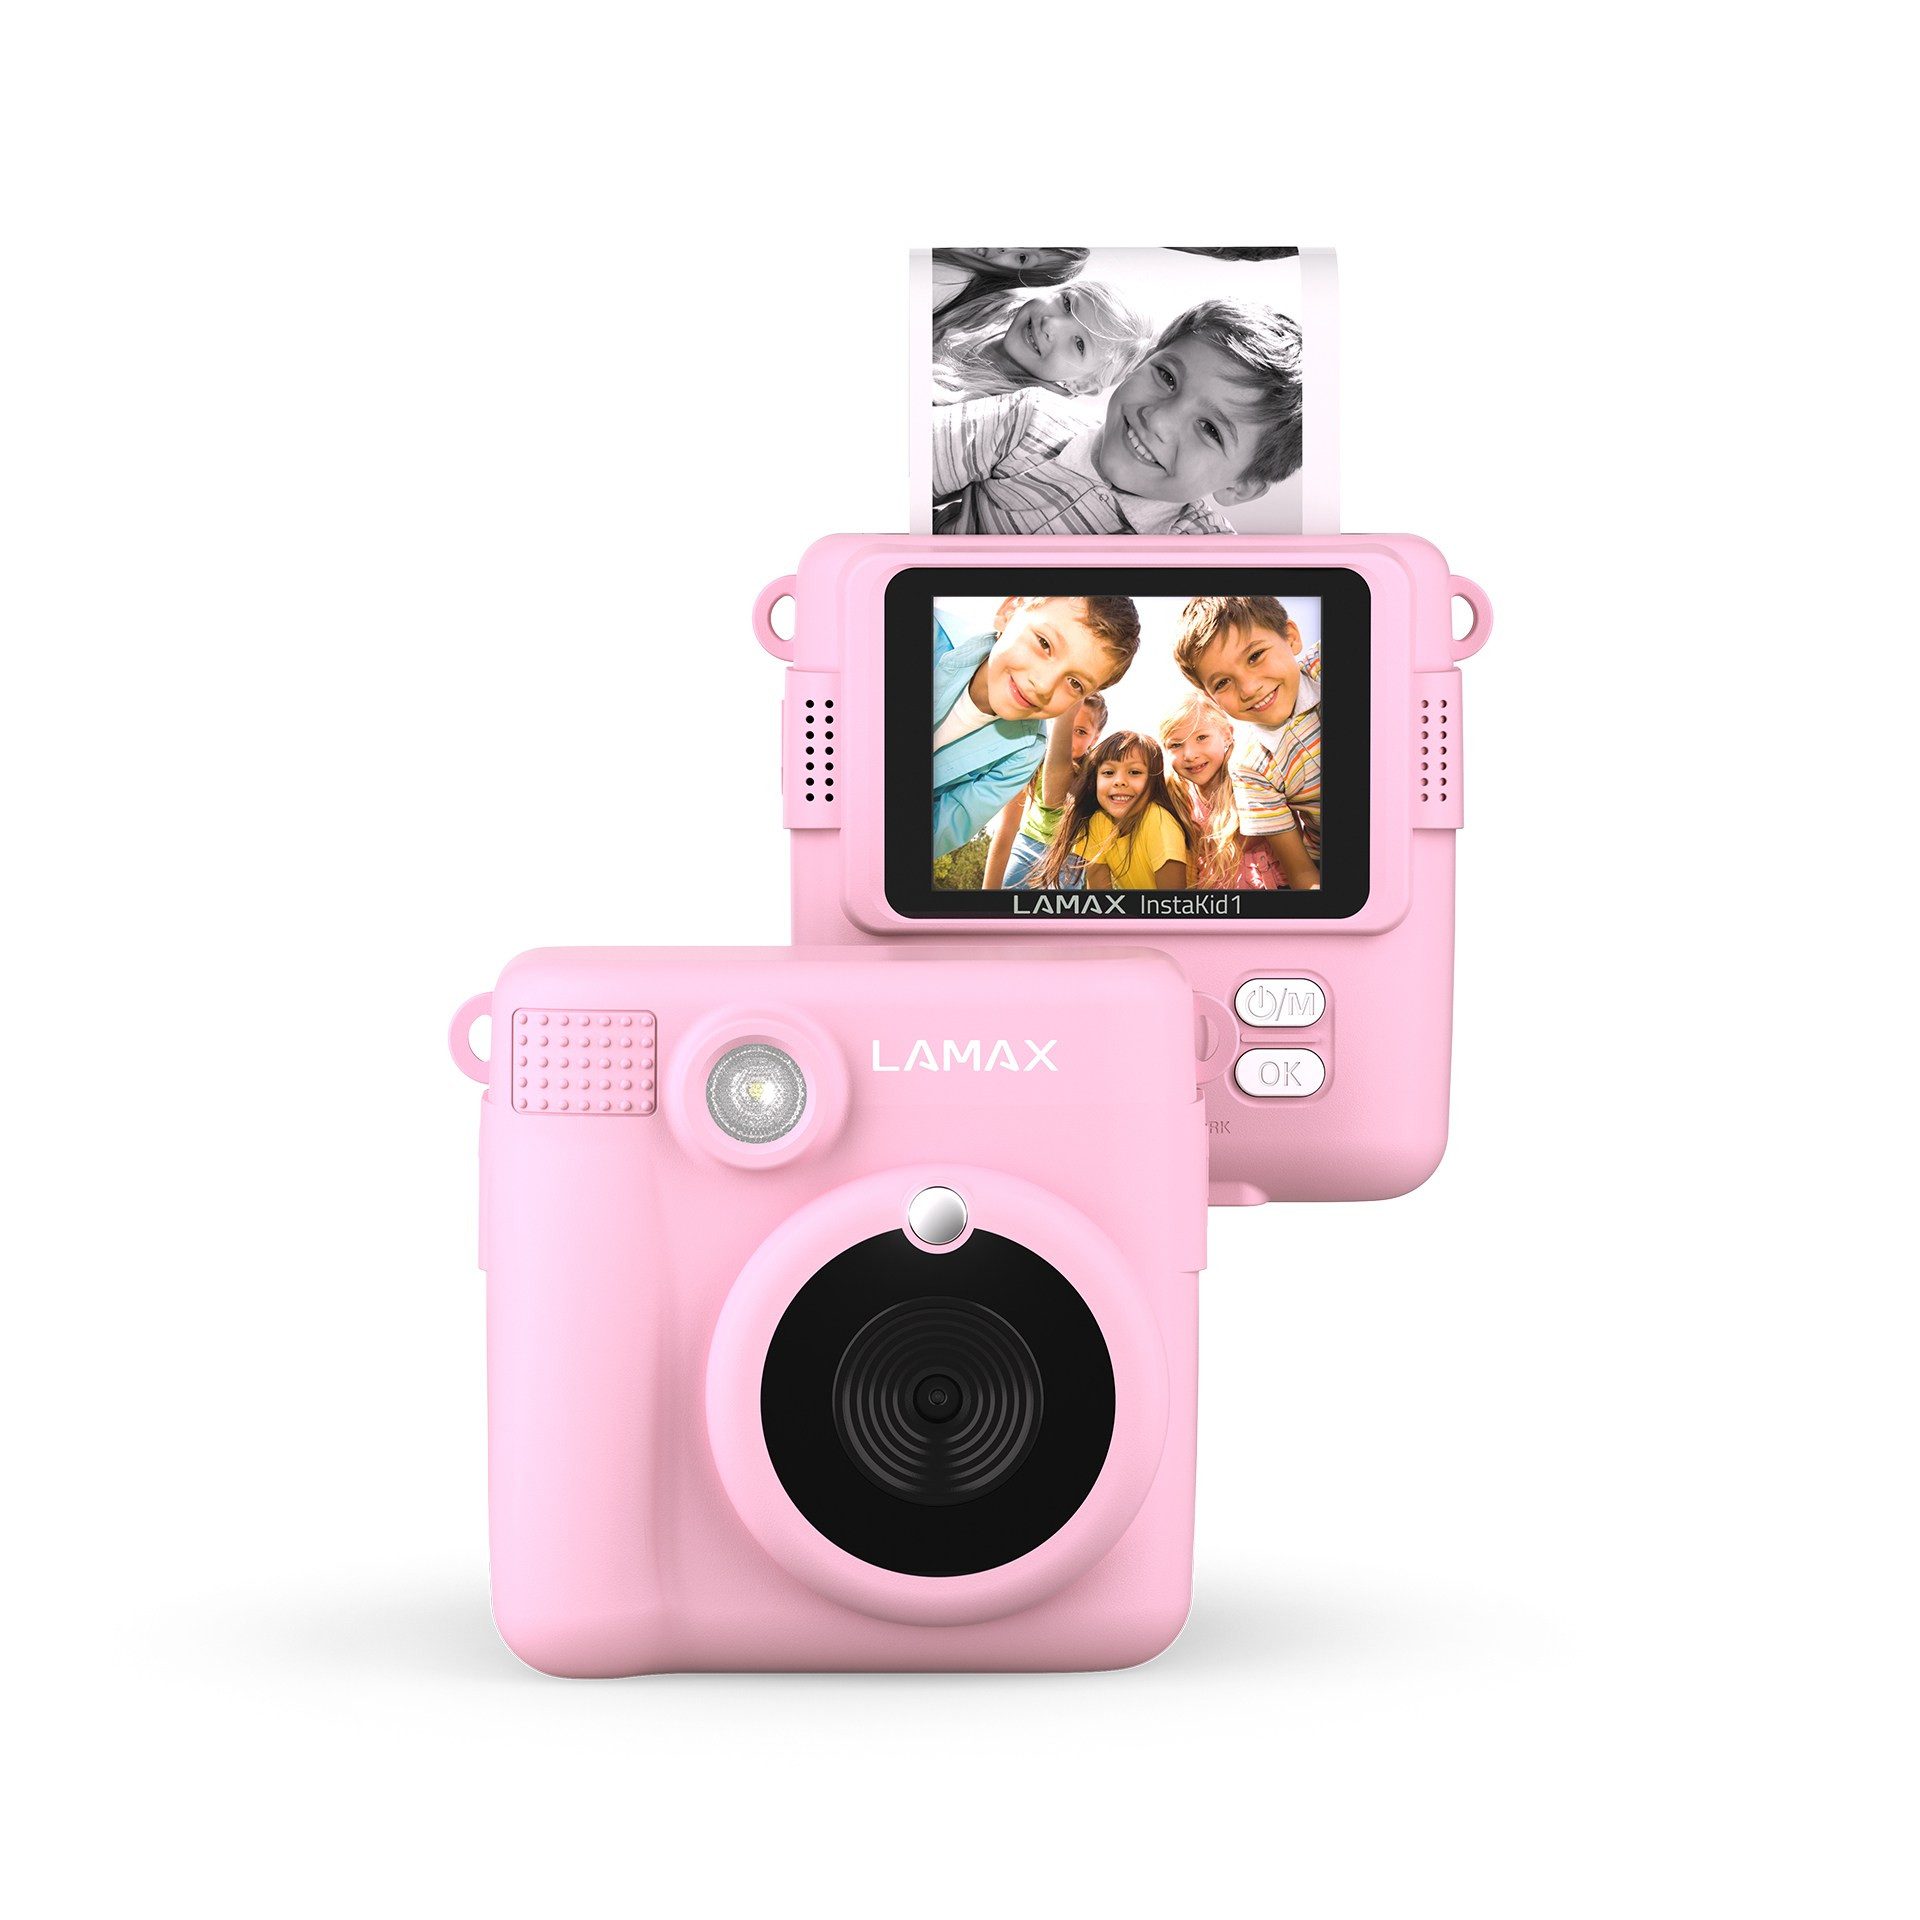 LAMAX InstaKid1, Sofortdruck auf Thermopapier, Videoaufnahme Kinderkamera (F/2.4, 8 MP, 16x opt. Zoom, Großes Farbdisplay, 100 Fotos pro Rolle, Speicherung auf microSD-Karte)